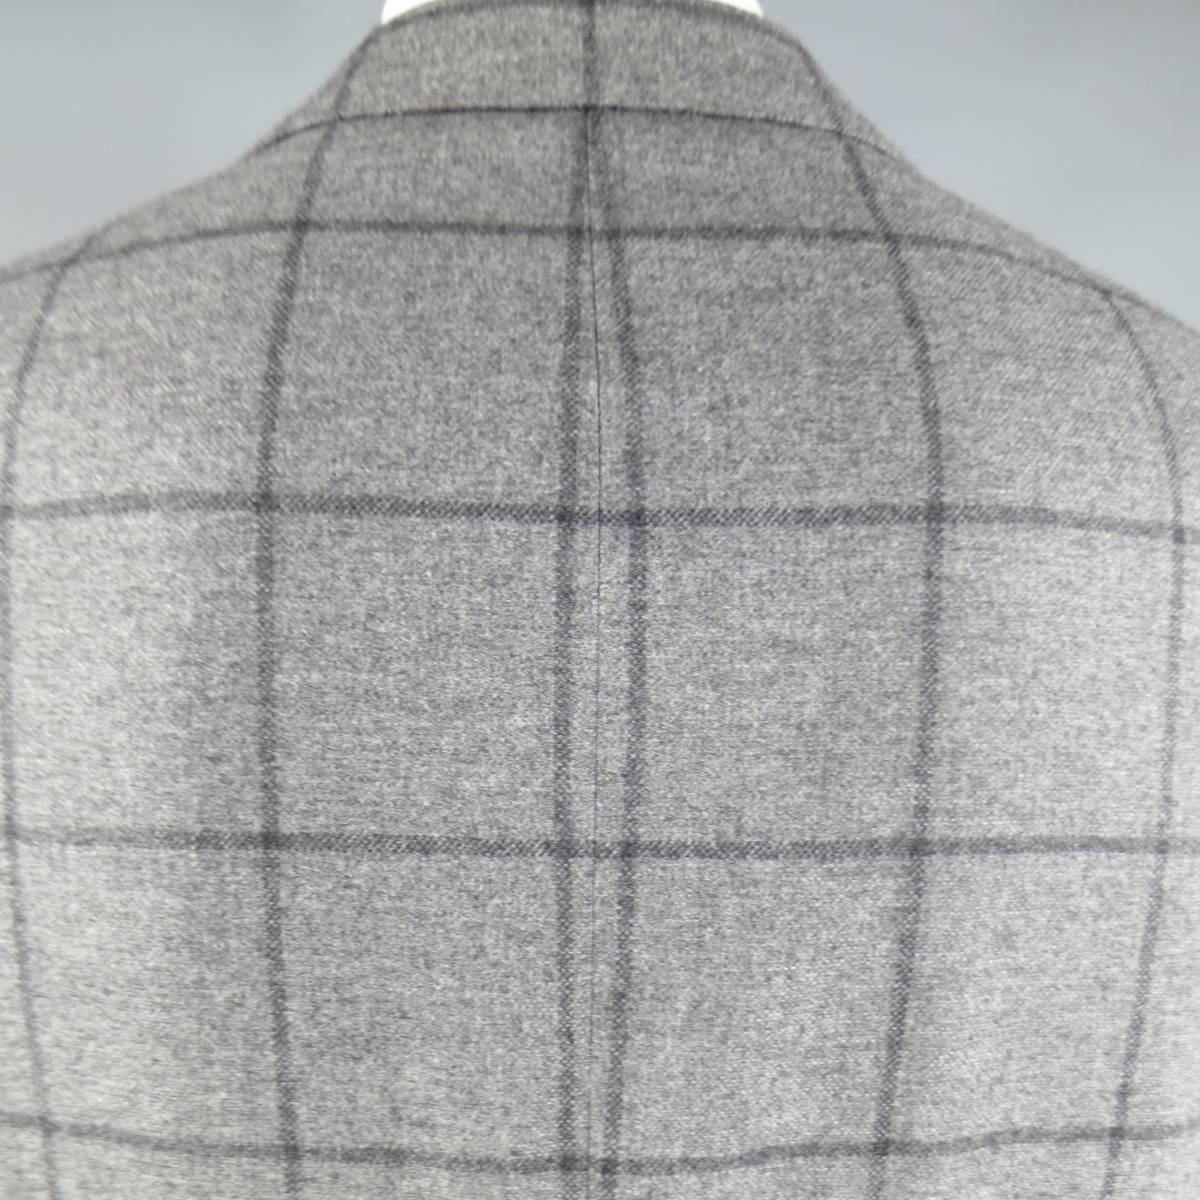 Kiton Men's Suit 46 R 3 Button Gray Windowpane Cashmere Notch Lapel Jacket Pants 1